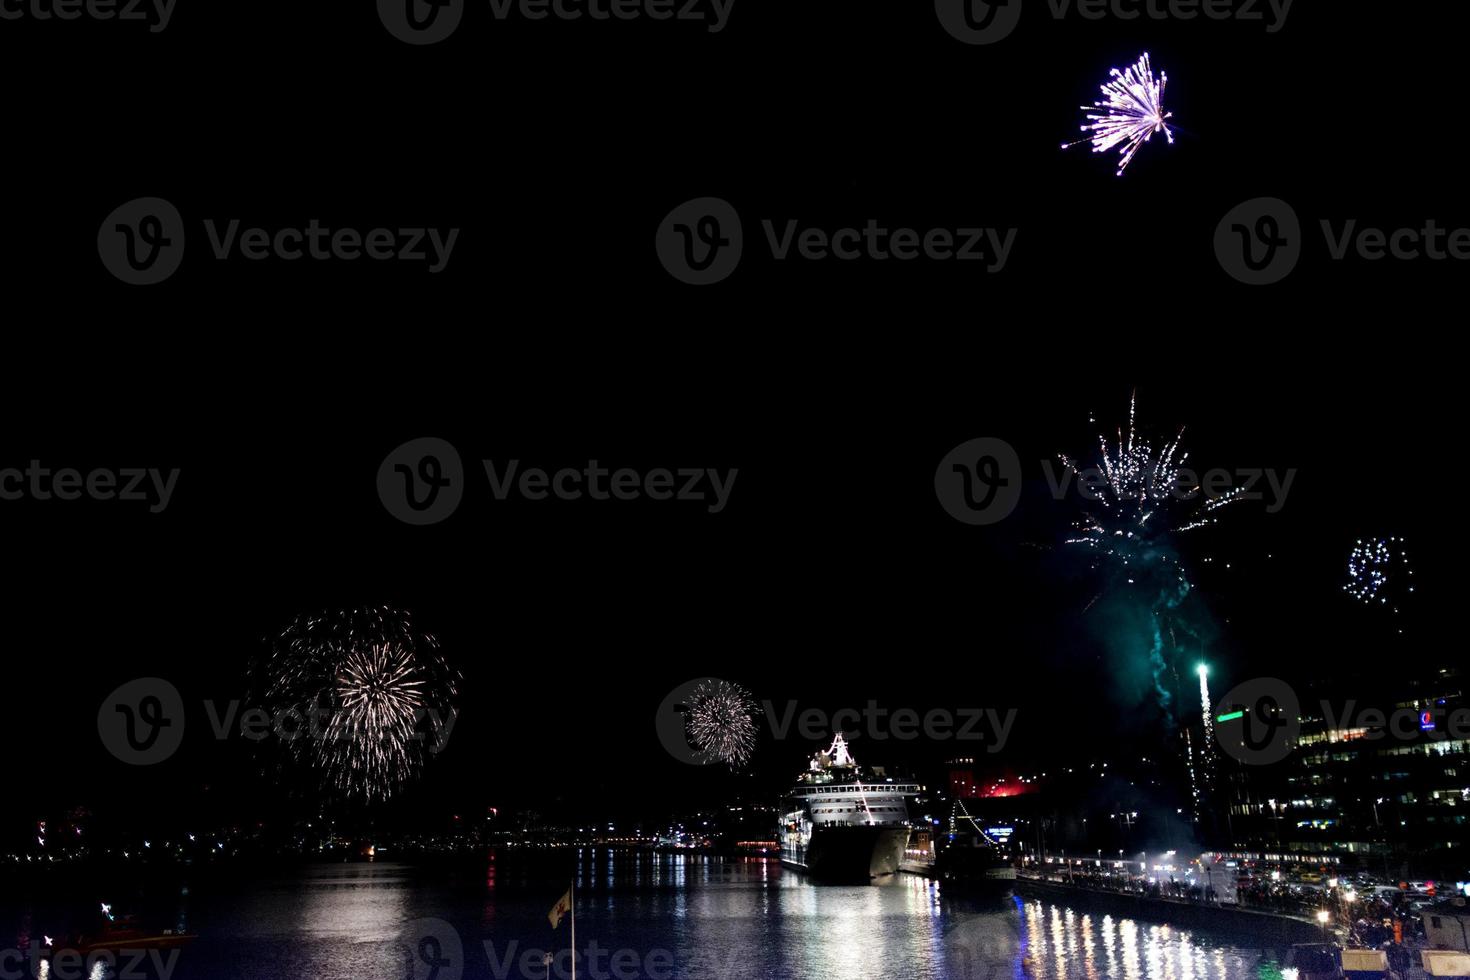 fireworks in stockholm harbor sweden photo